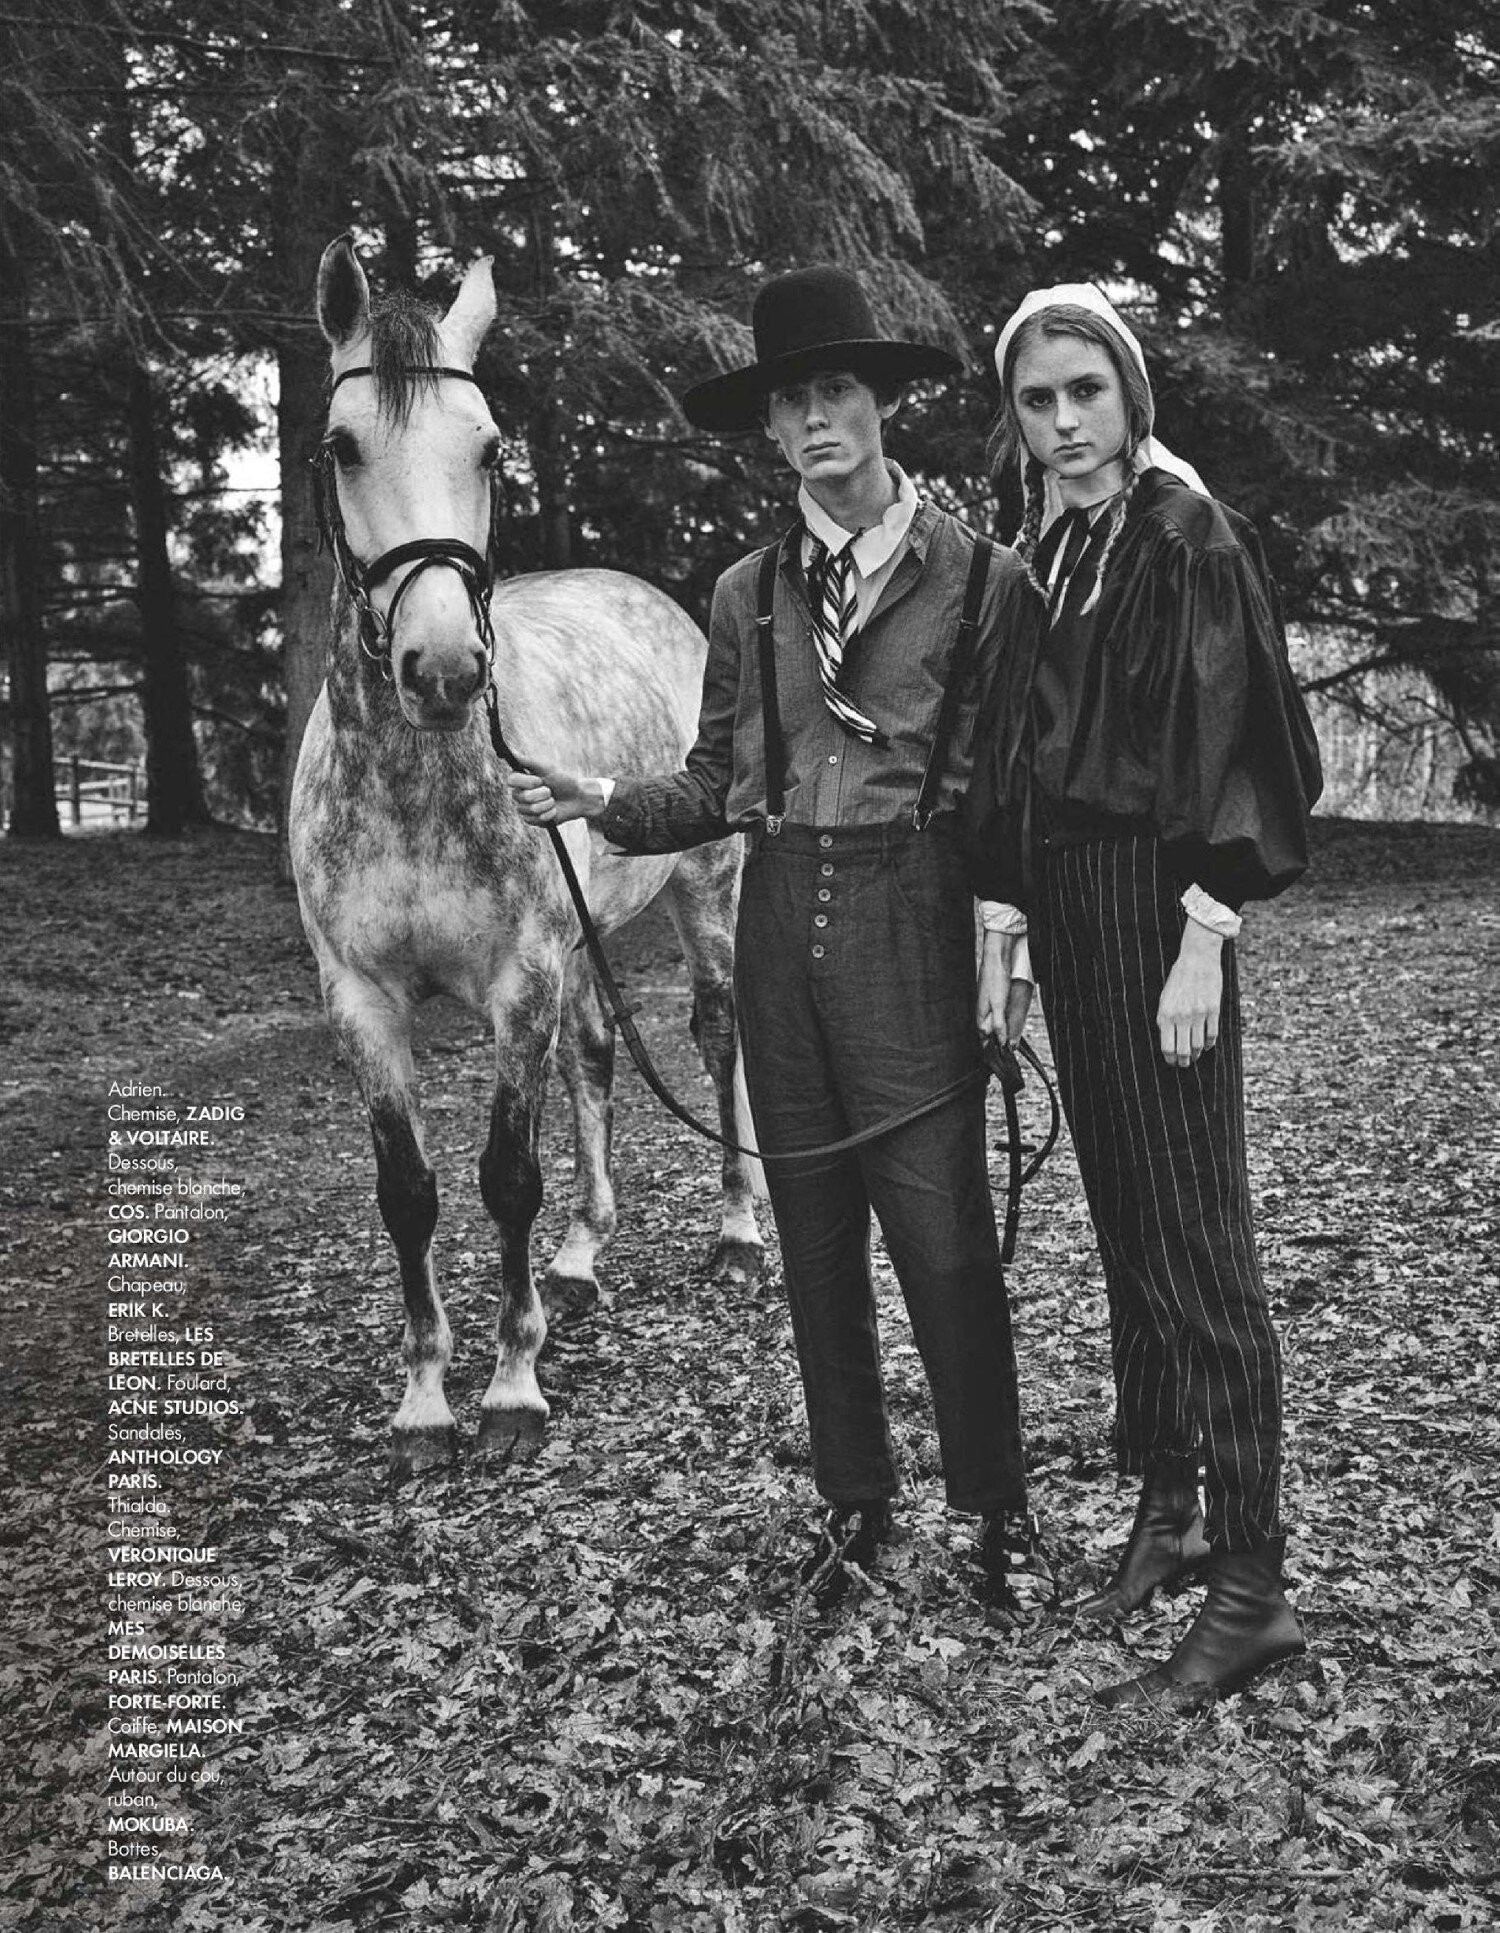 Johan Sandberg 'Belle Amish' for ELLE France May 7 (21).jpg